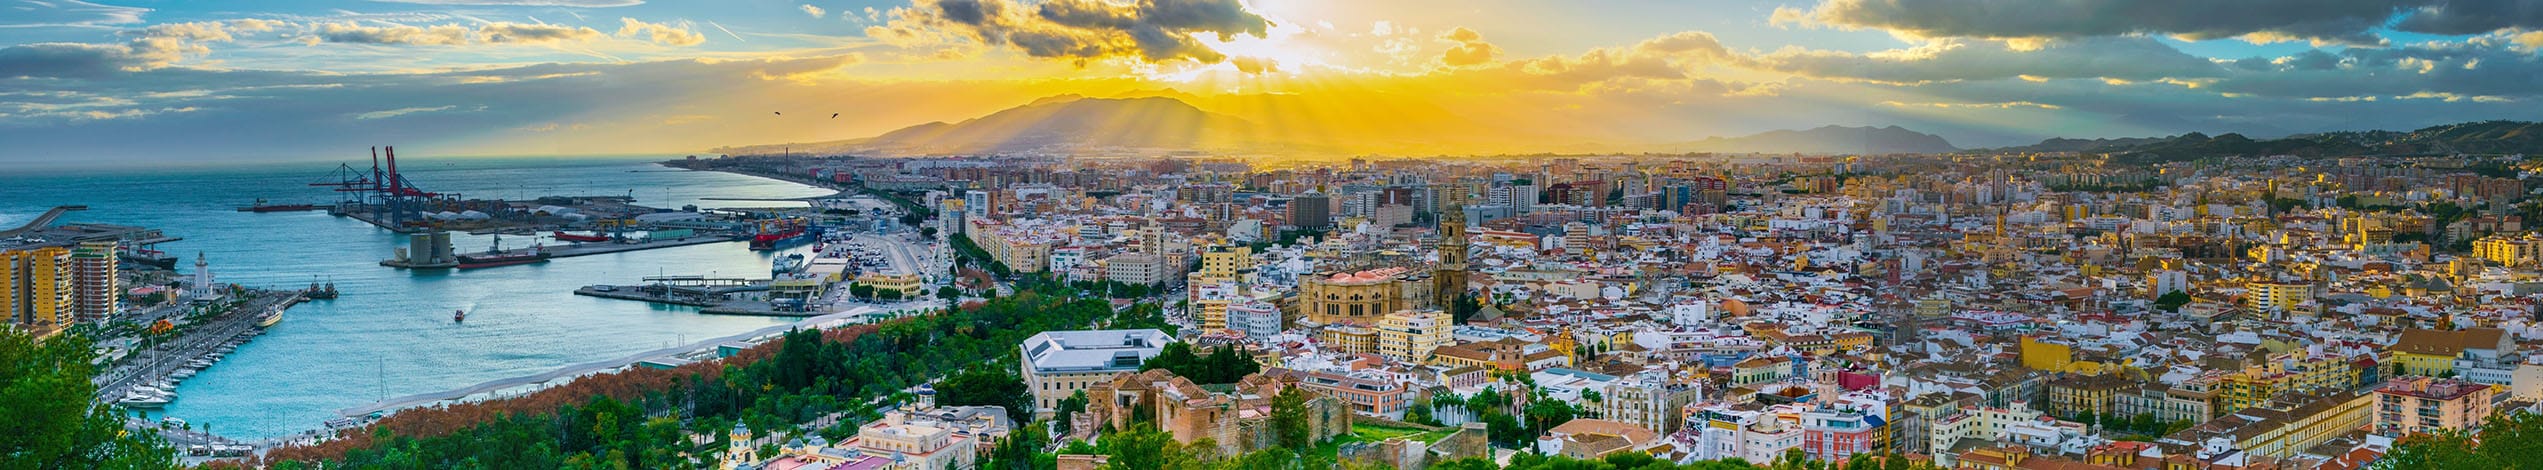 Studieresa till Spanien - Málaga